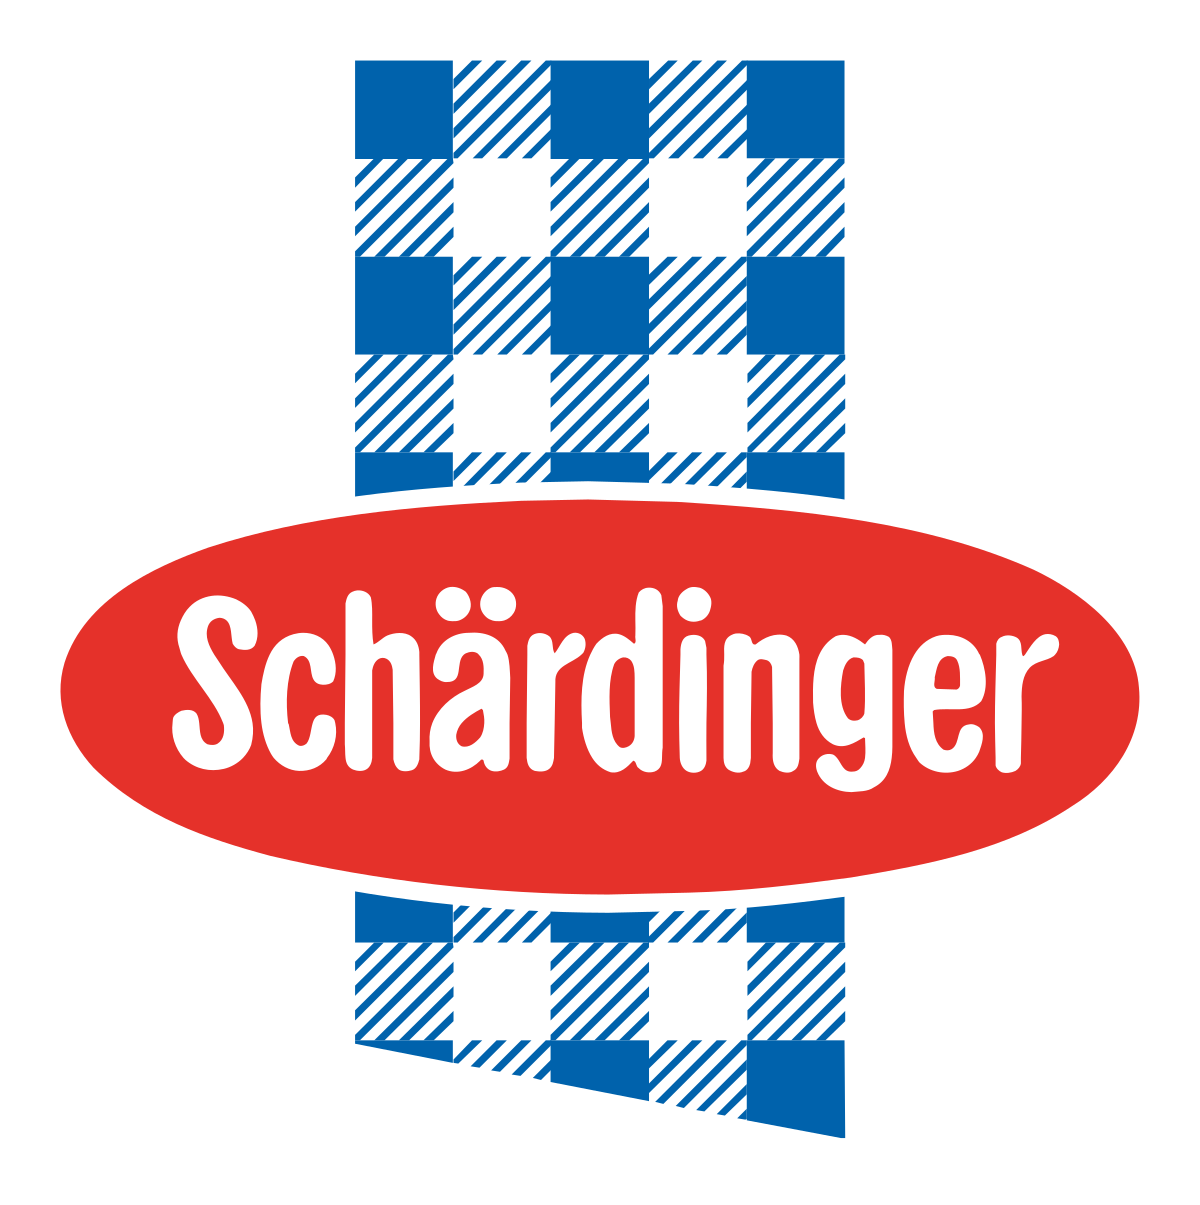 sch-rdinger